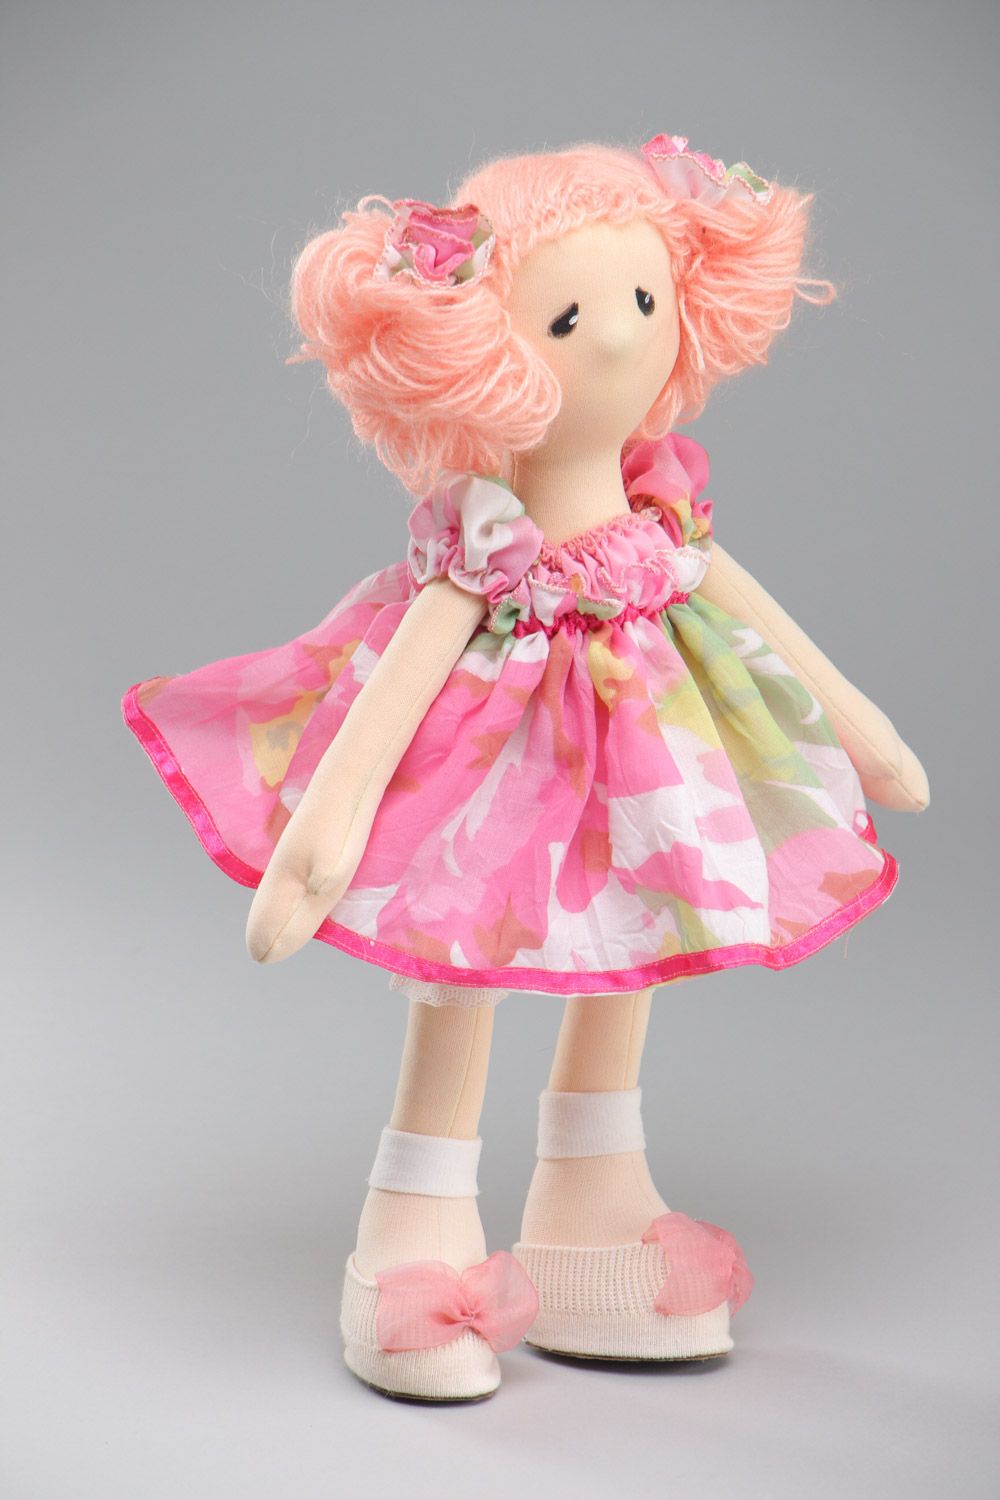 Авторская кукла игровая розовая в платье ручной работы из ткани среднего размера фото 2